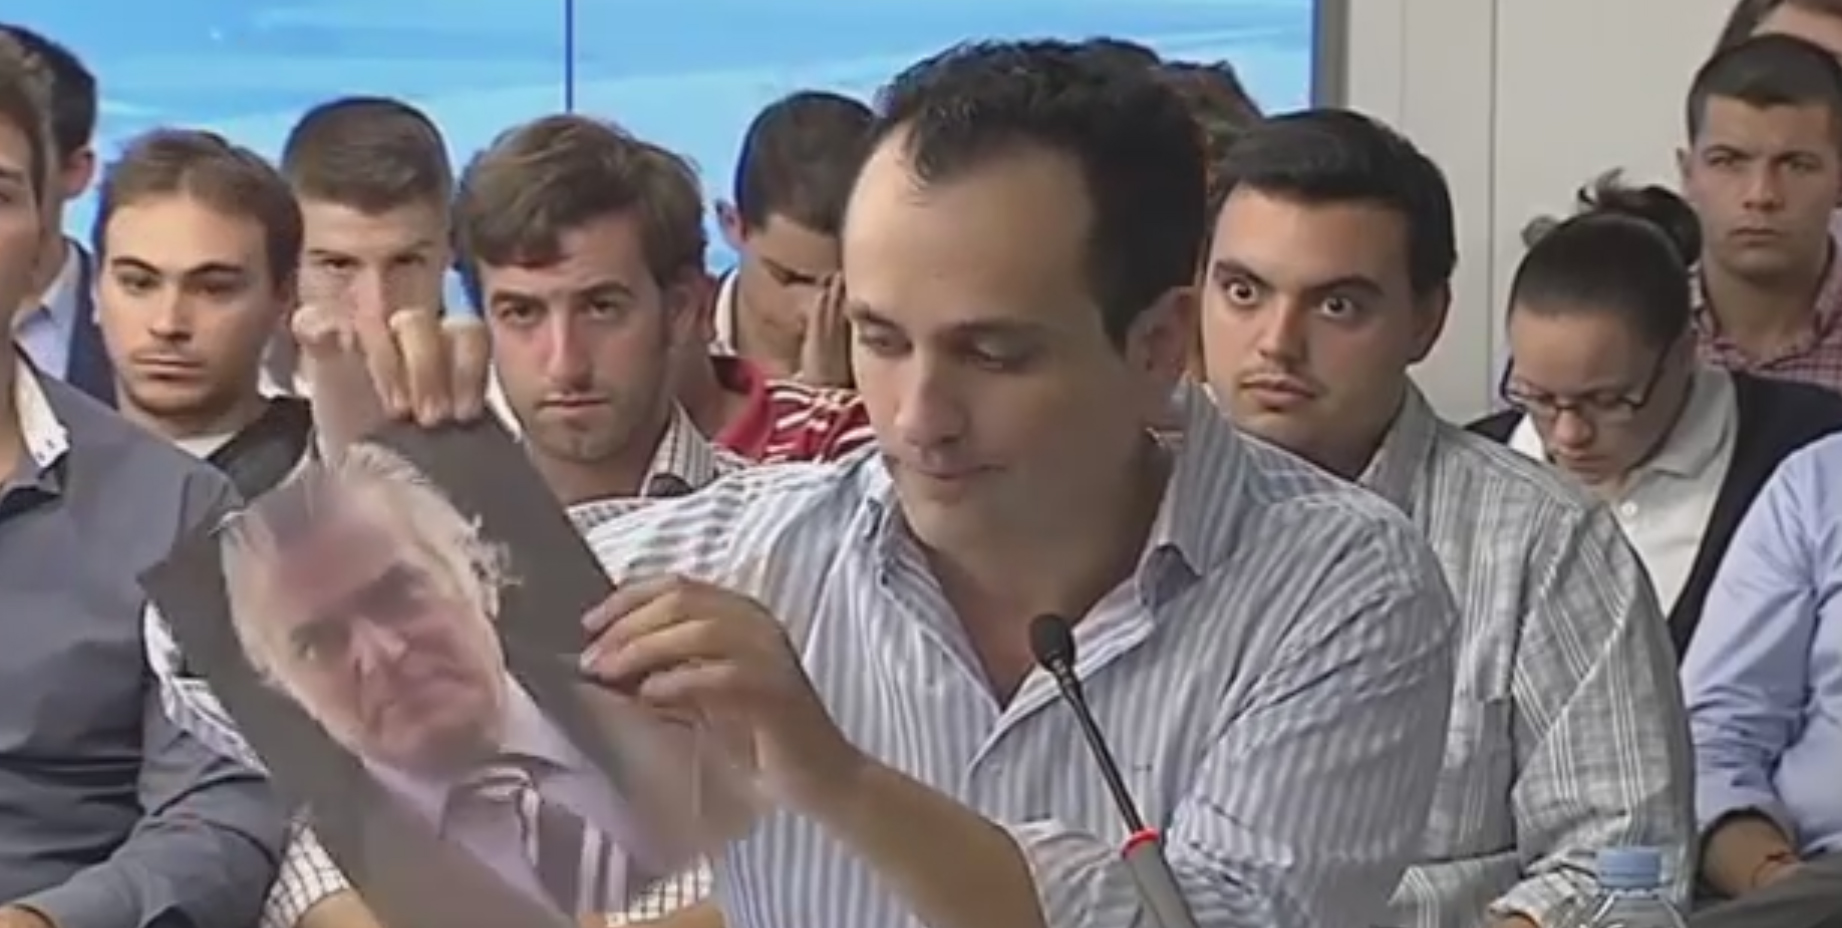 Antonio José Mesa rompe una foto de Luis Bárcenas durante el debate para liderar Nuevas Generaciones de Madrid.